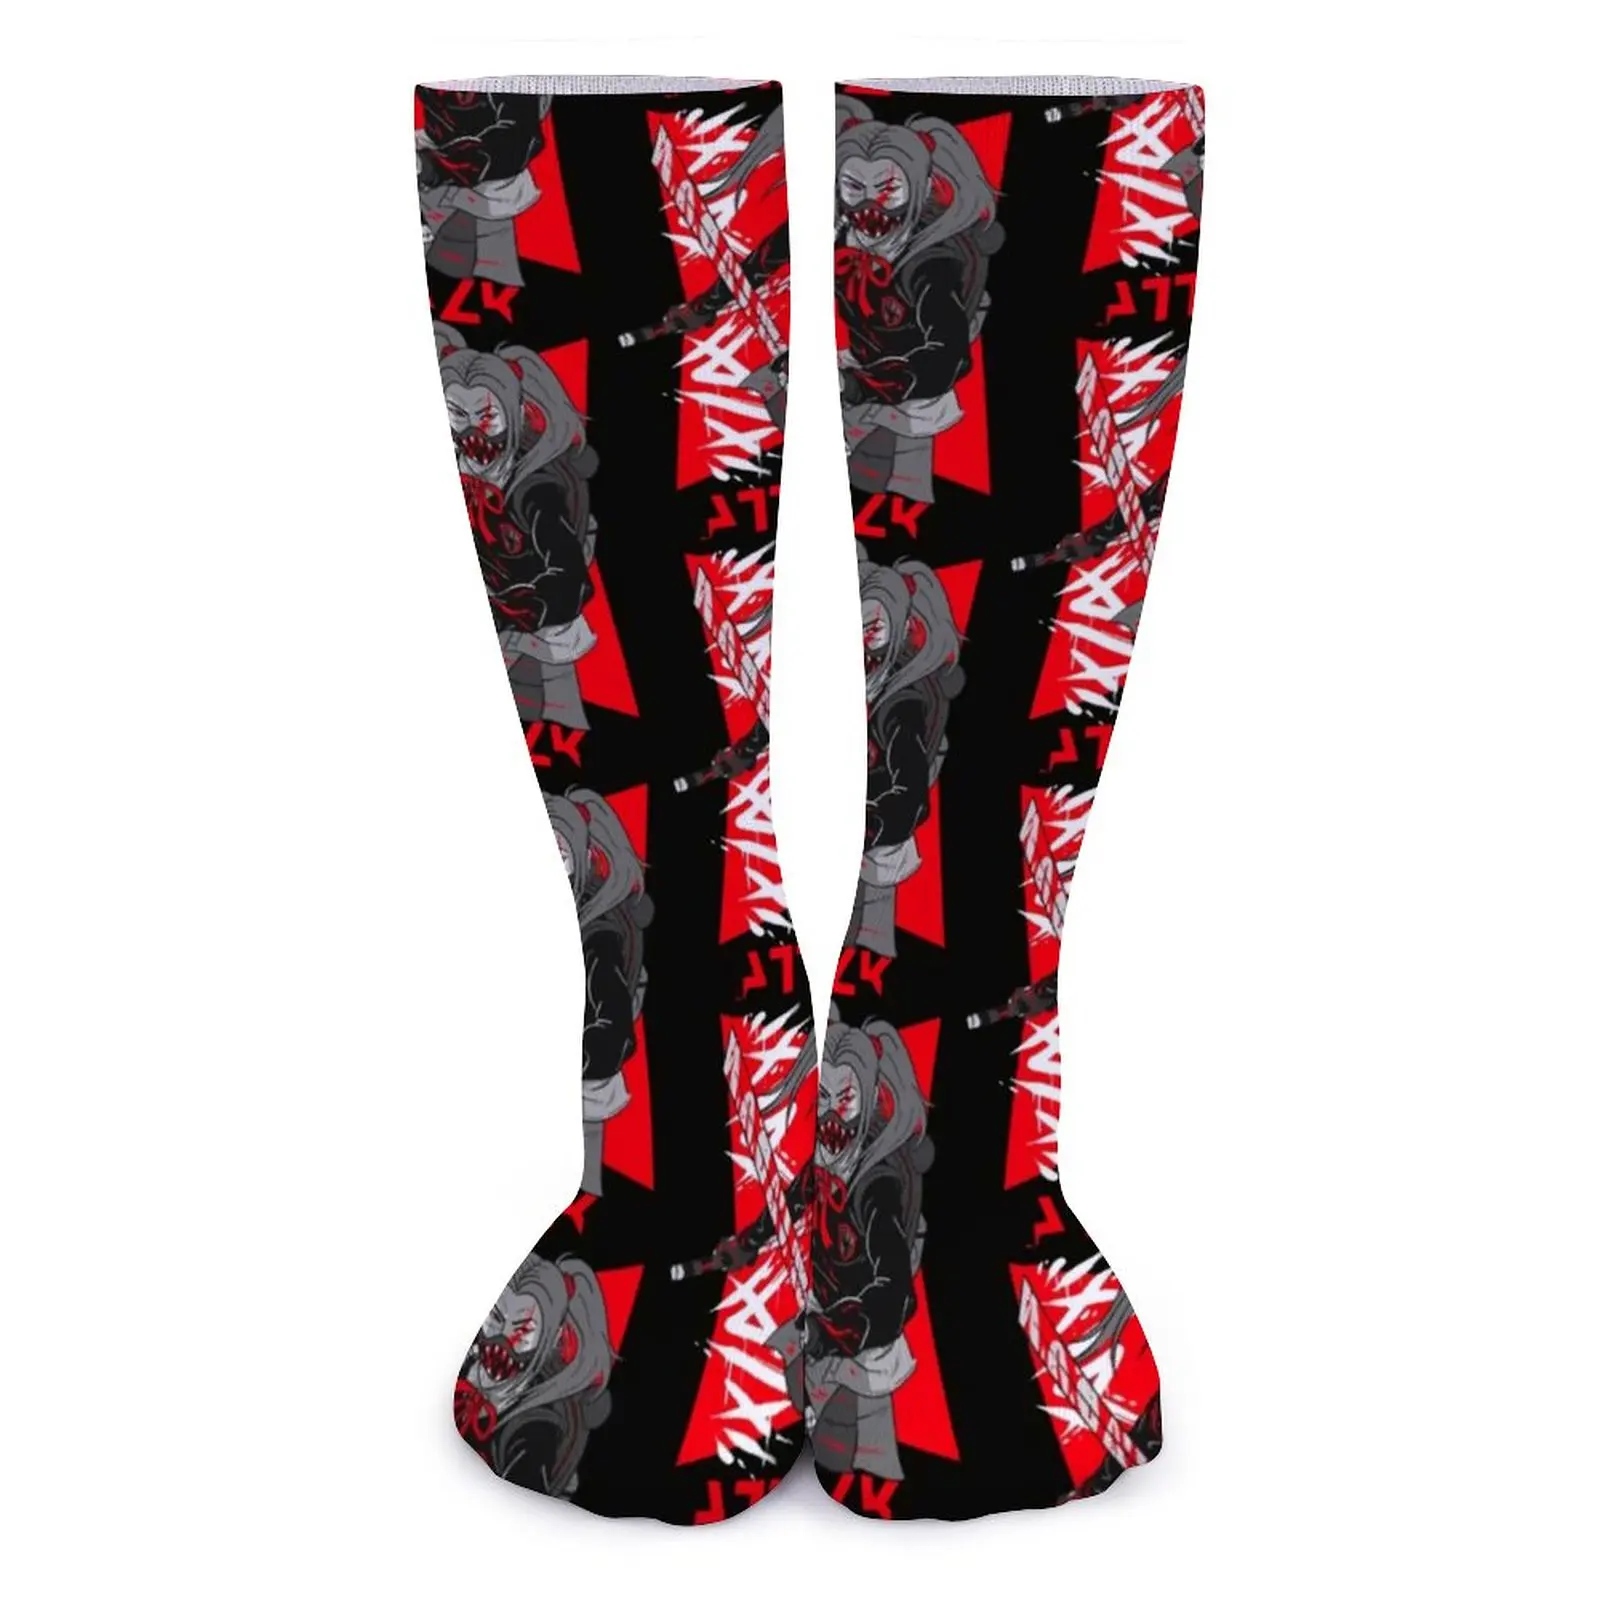 

Носки Warrior, женские чулки с рисунком, большие противоскользящие носки из химического волокна, новинка, носки для фитнеса